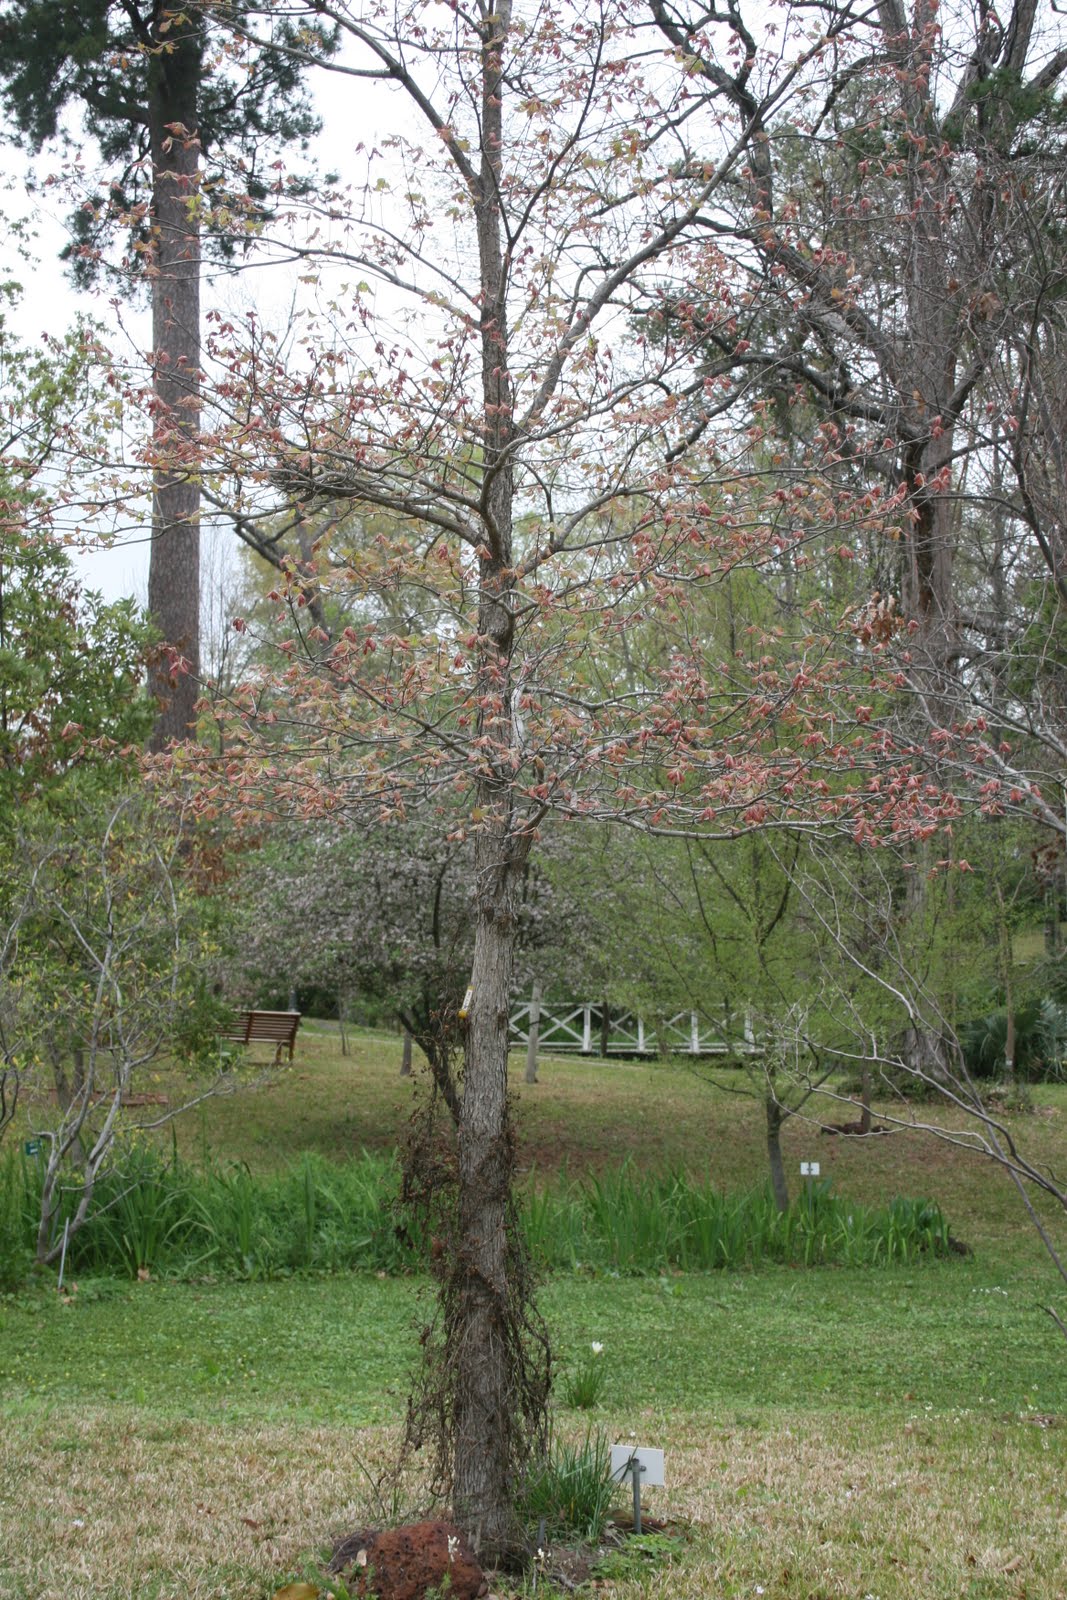 Centenary College Arboretum: Quercus alba